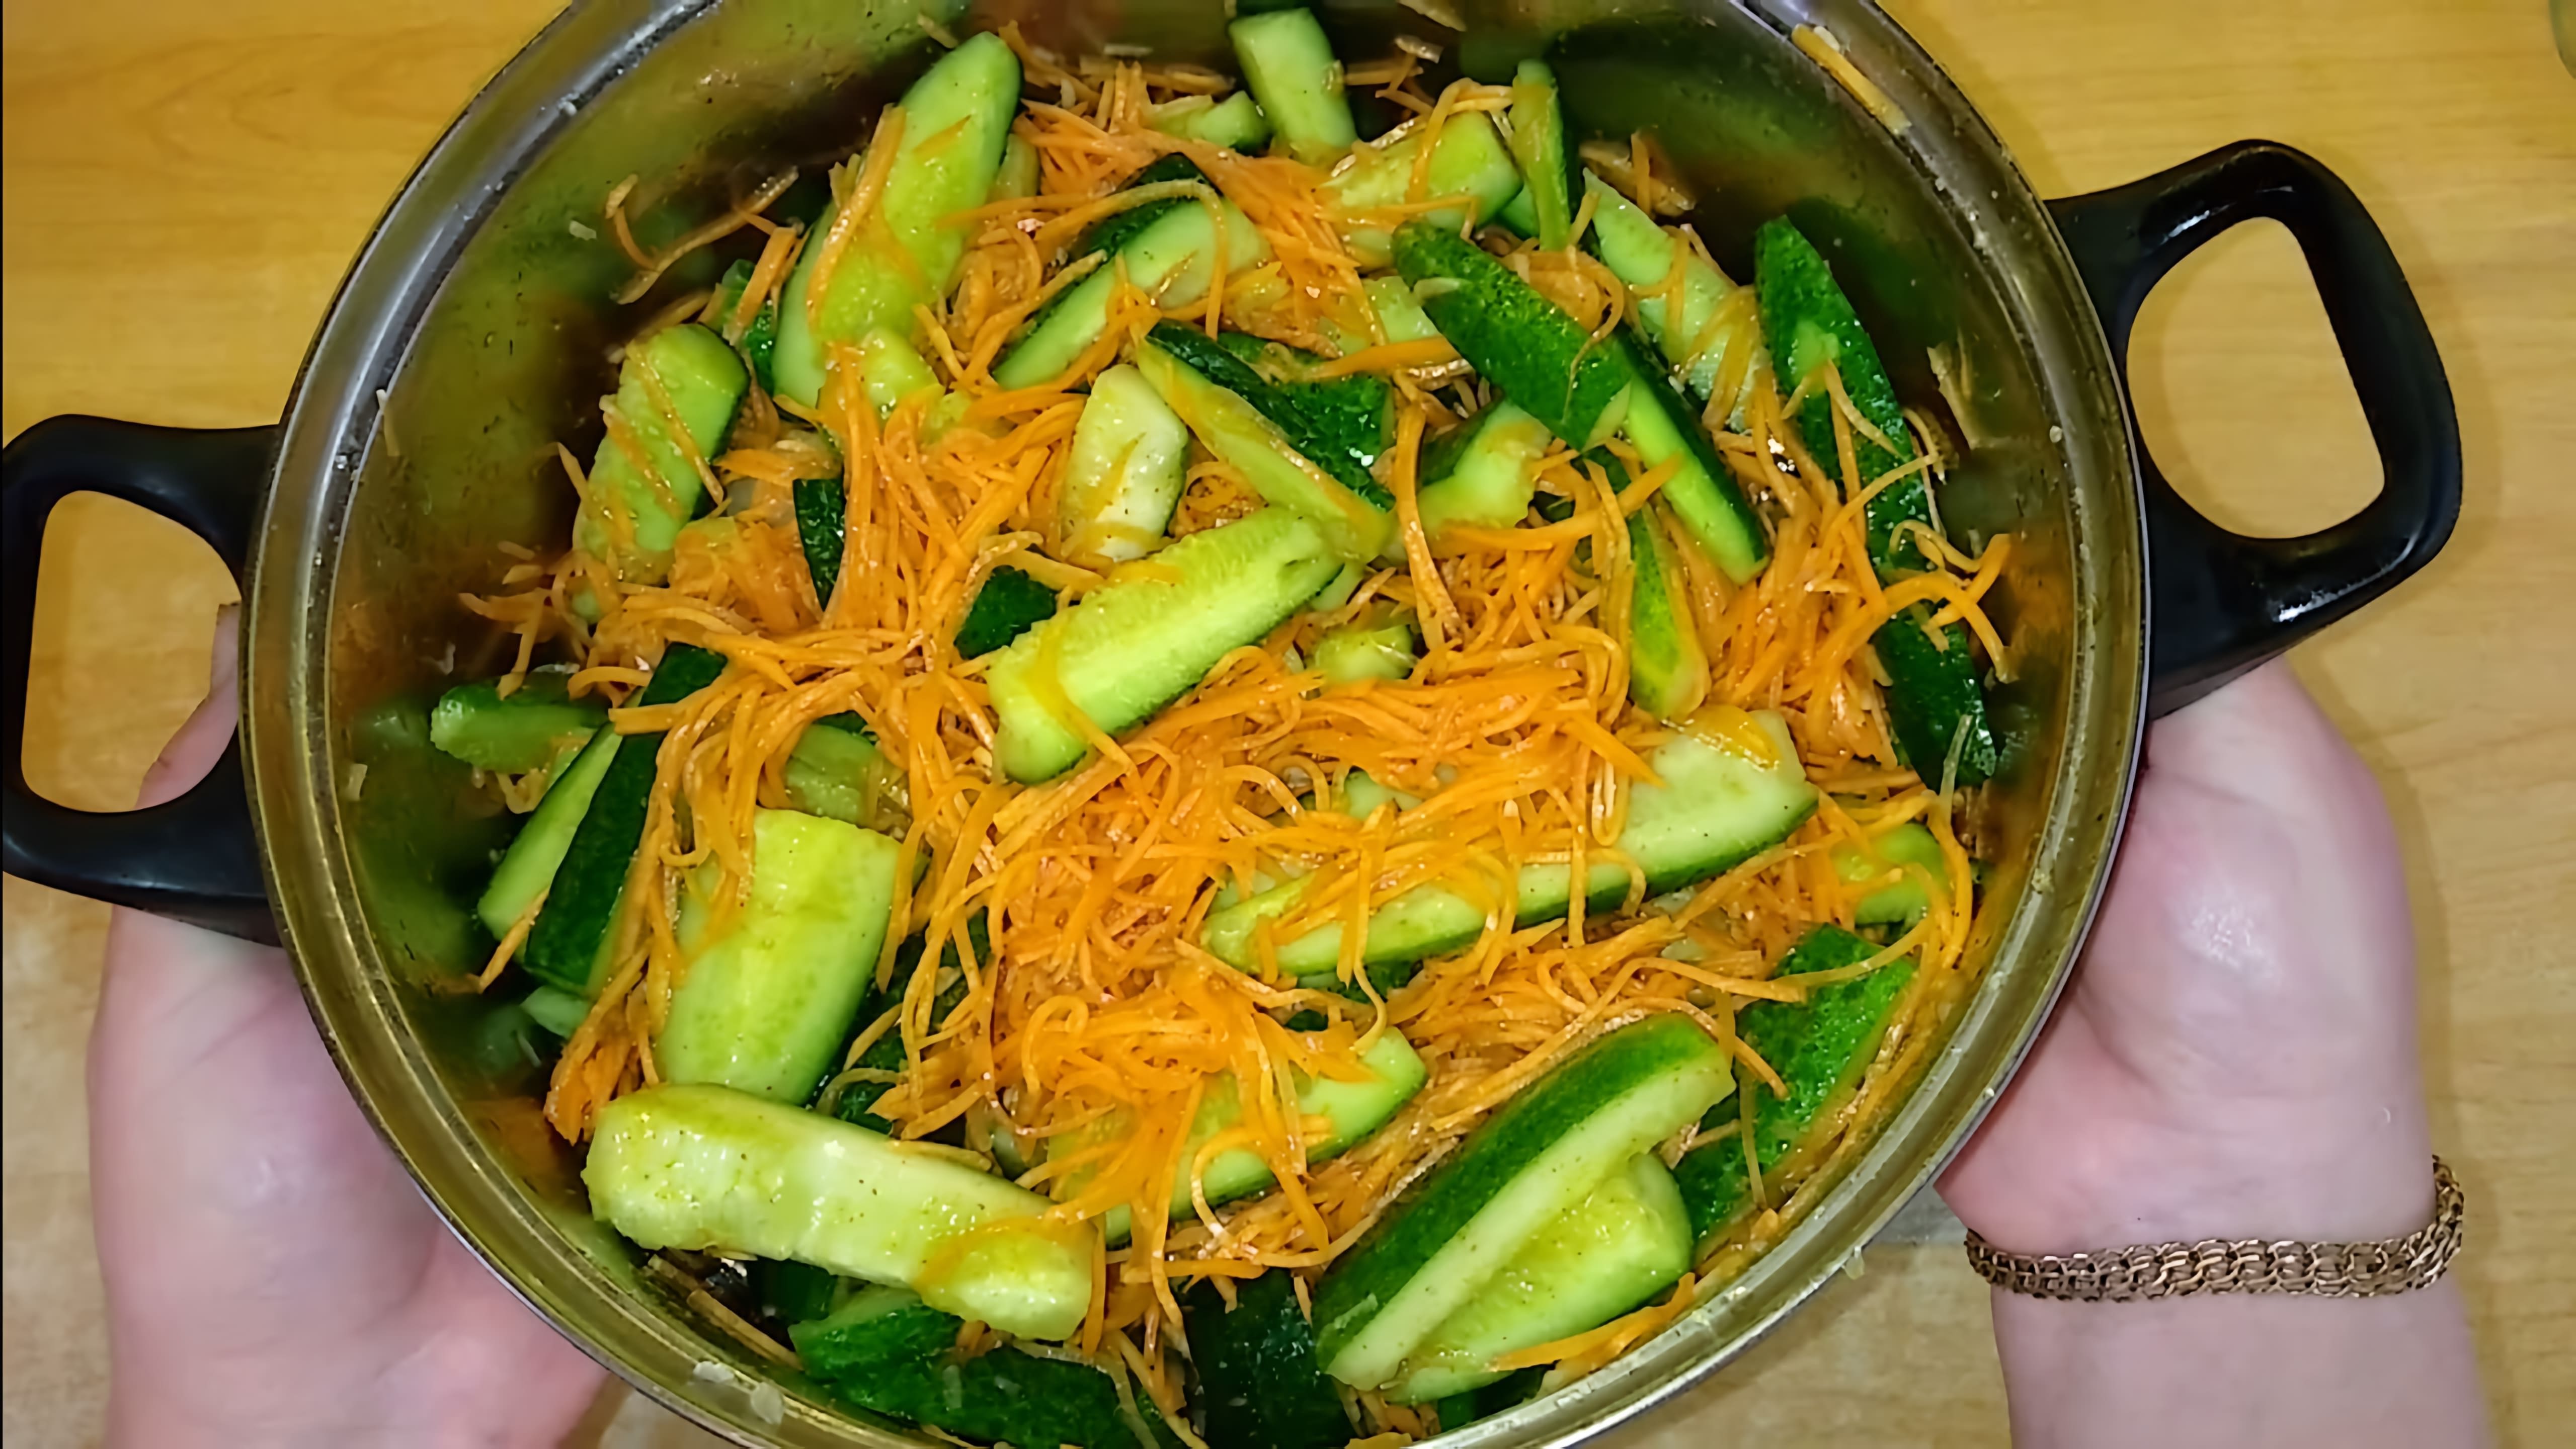 В этом видео демонстрируется процесс приготовления салата на зиму по корейски из огурцов и моркови